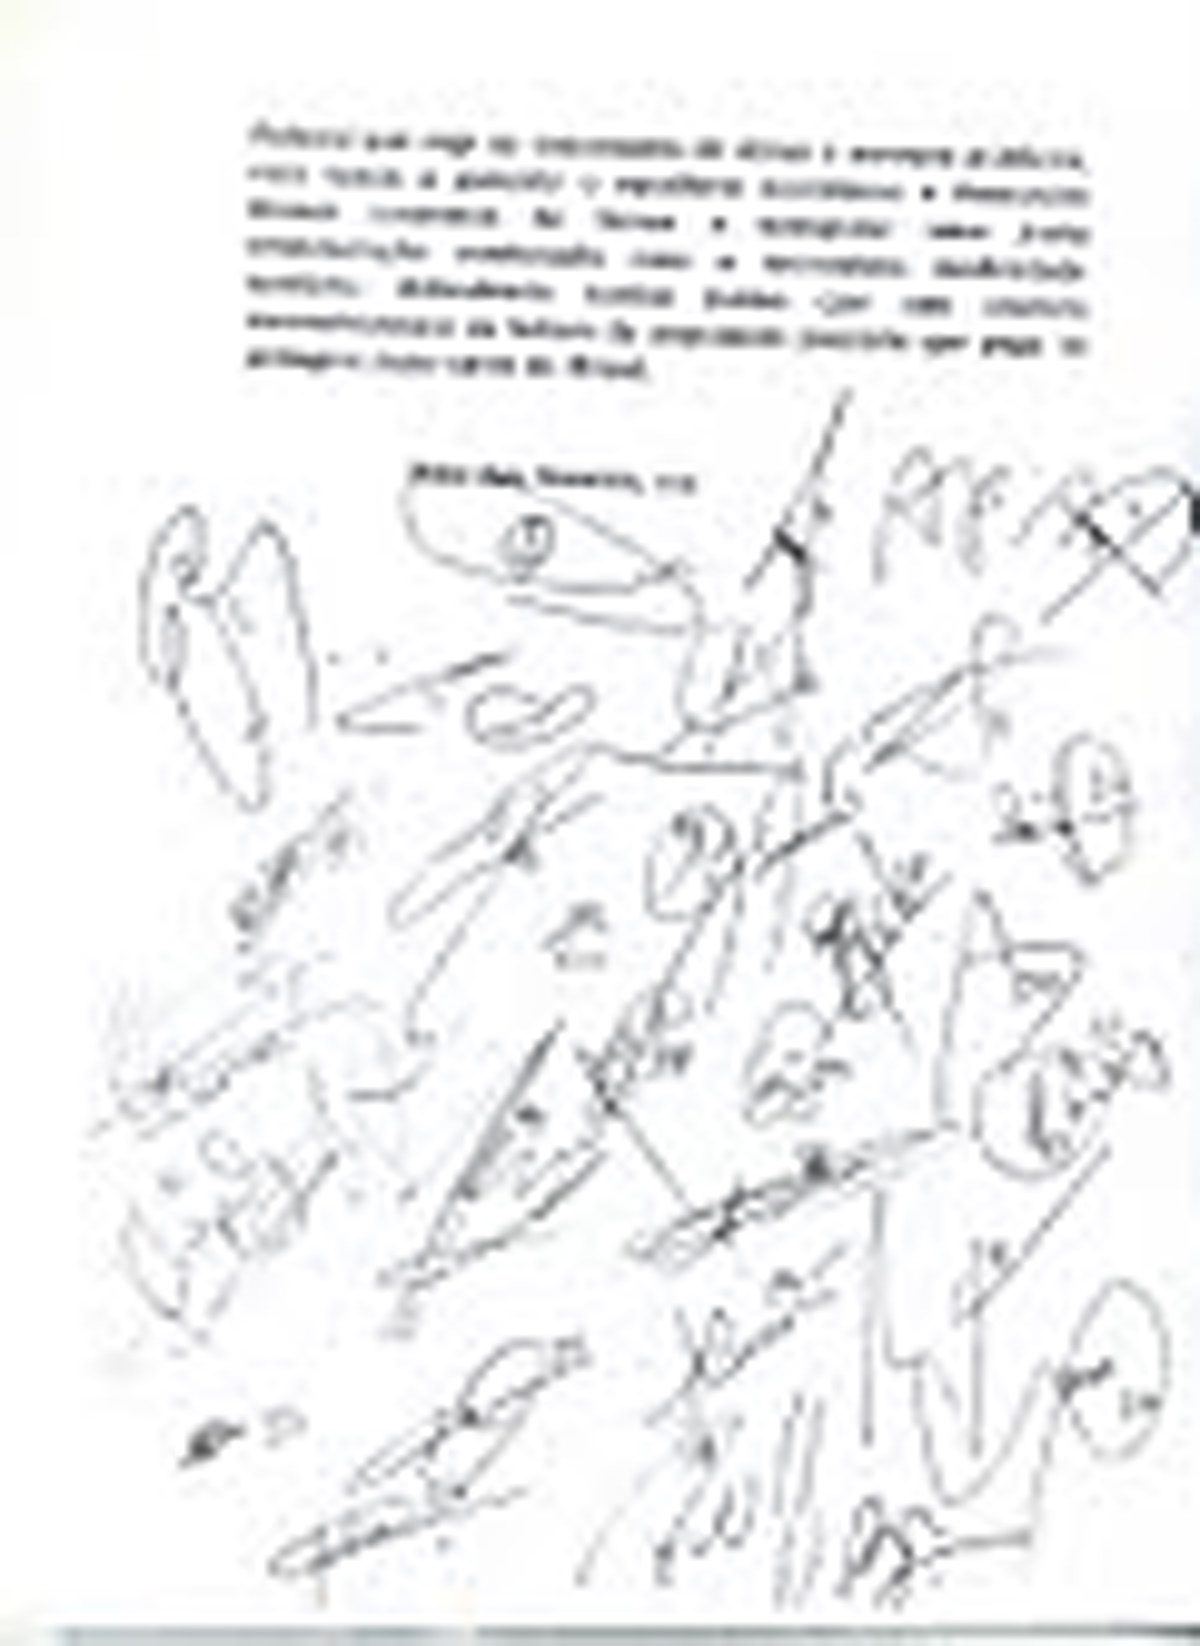 Assinaturas dos  parlamentares no pedido<a style='float:right;color:#ccc' href='https://www3.al.sp.gov.br/repositorio/noticia/10-2011/ENIOTATTOCPIc.jpg' target=_blank><i class='bi bi-zoom-in'></i> Clique para ver a imagem </a>